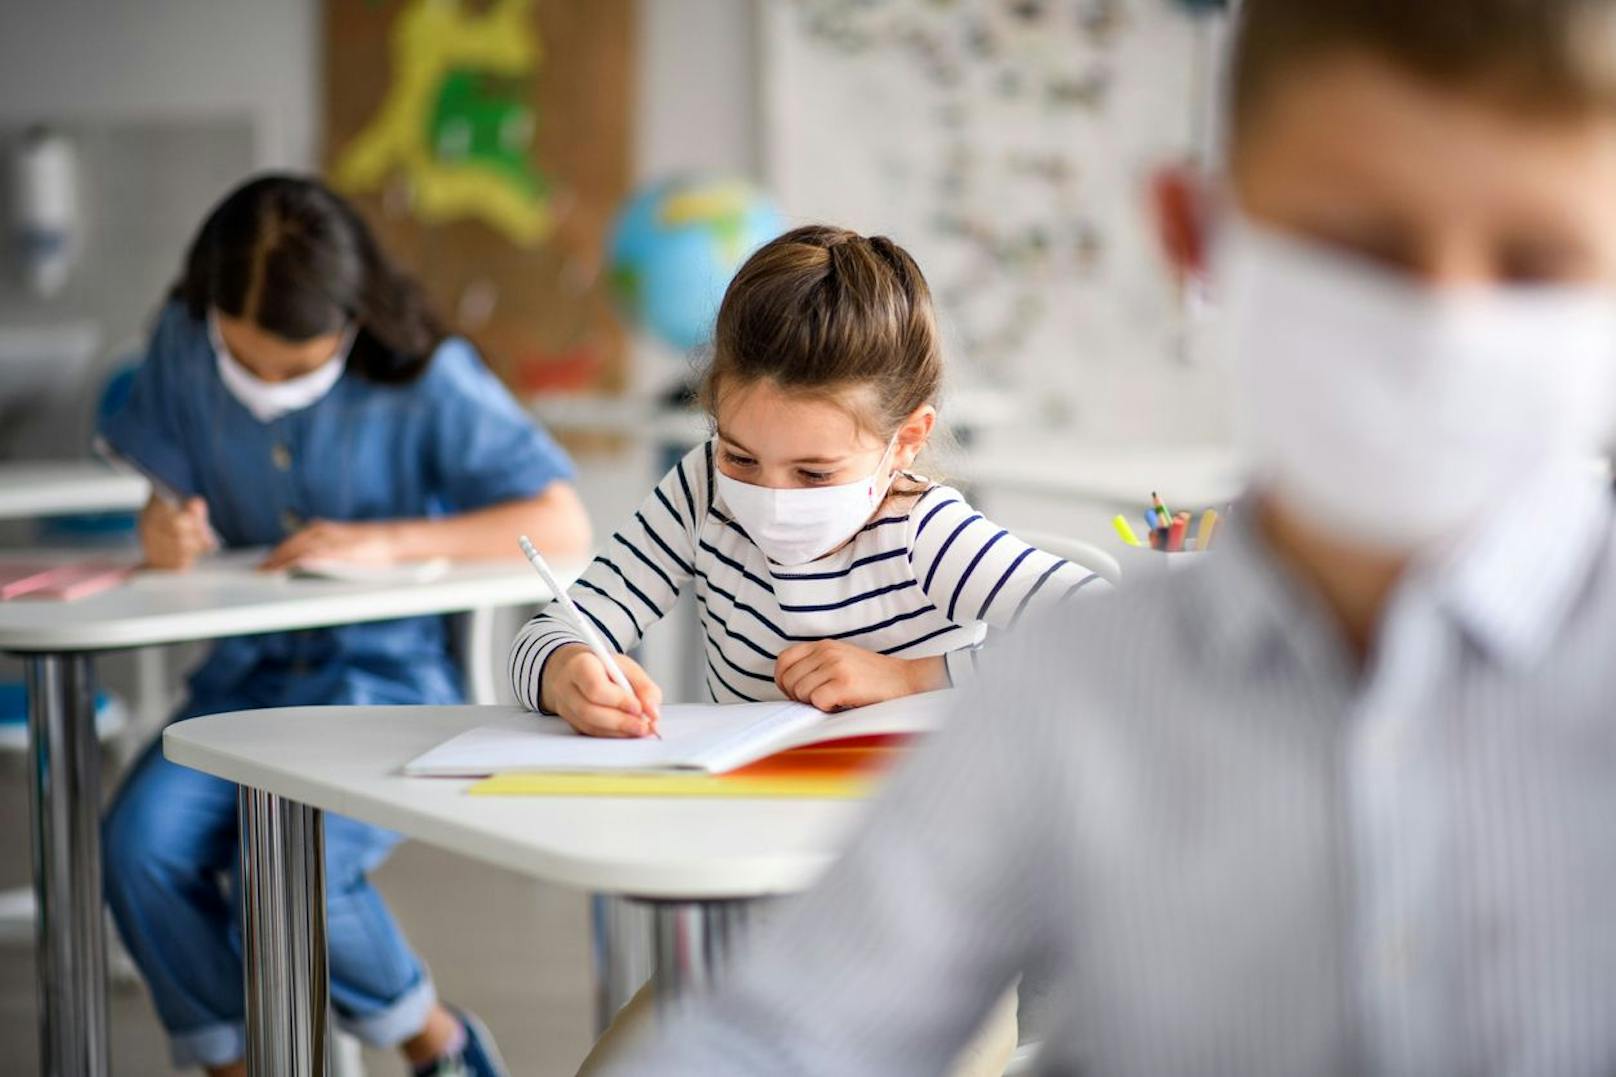 Kurios – Wiener Schule führt Maskenpflicht wieder ein